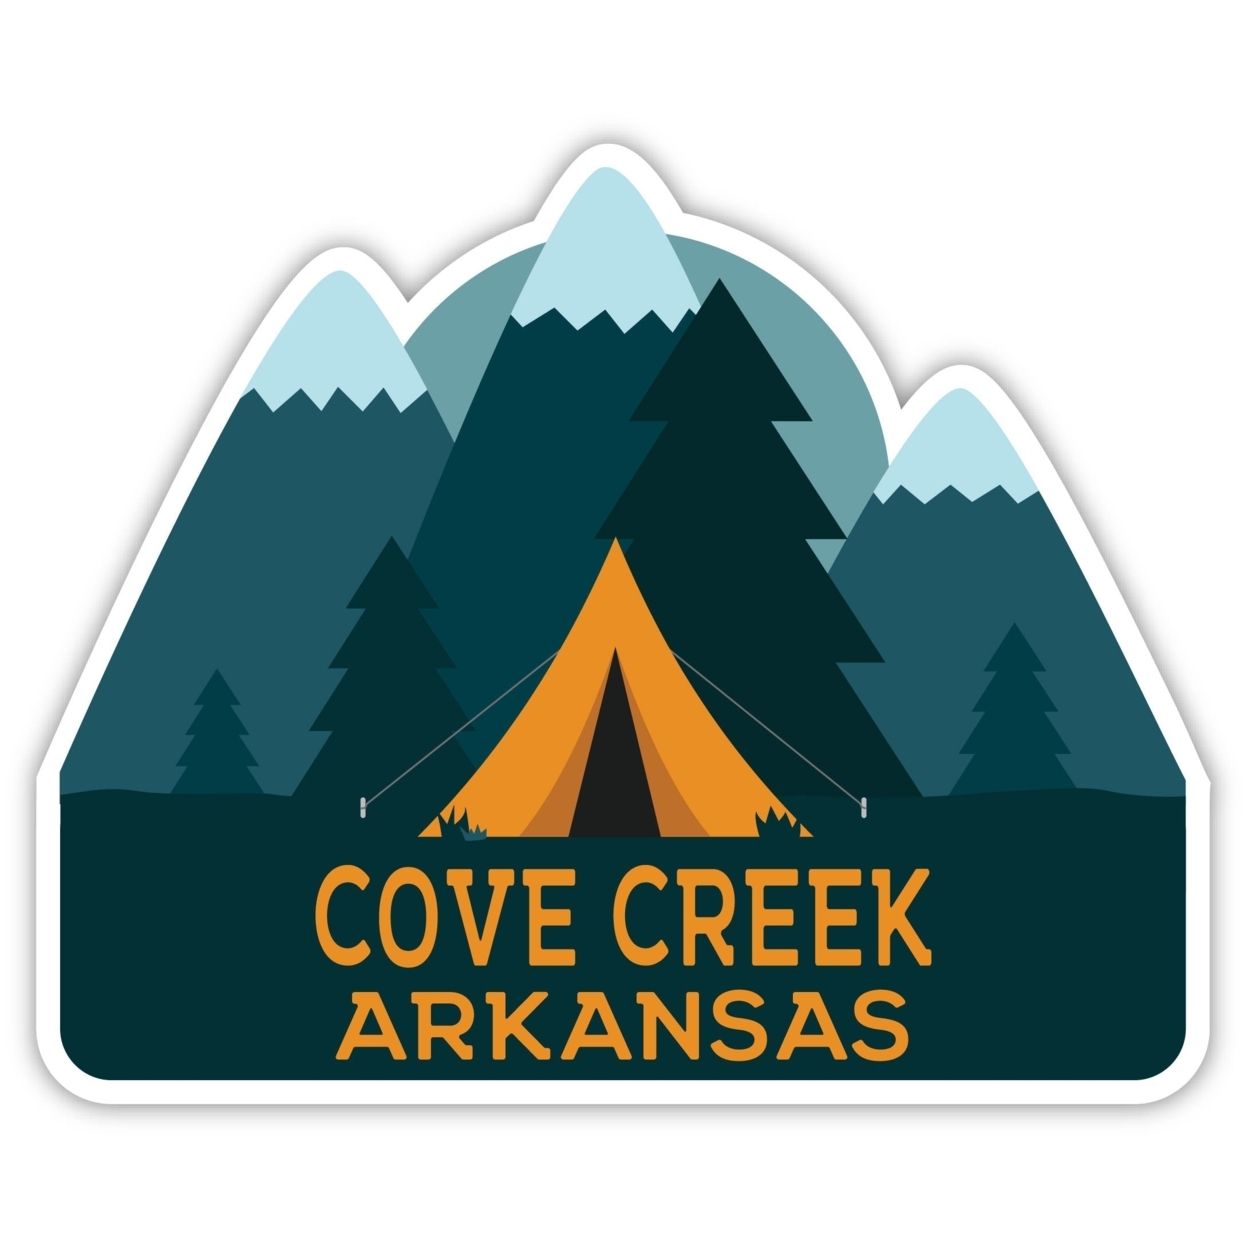 Cove Creek Arkansas Souvenir Decorative Stickers (Choose Theme And Size) - Single Unit, 8-Inch, Tent